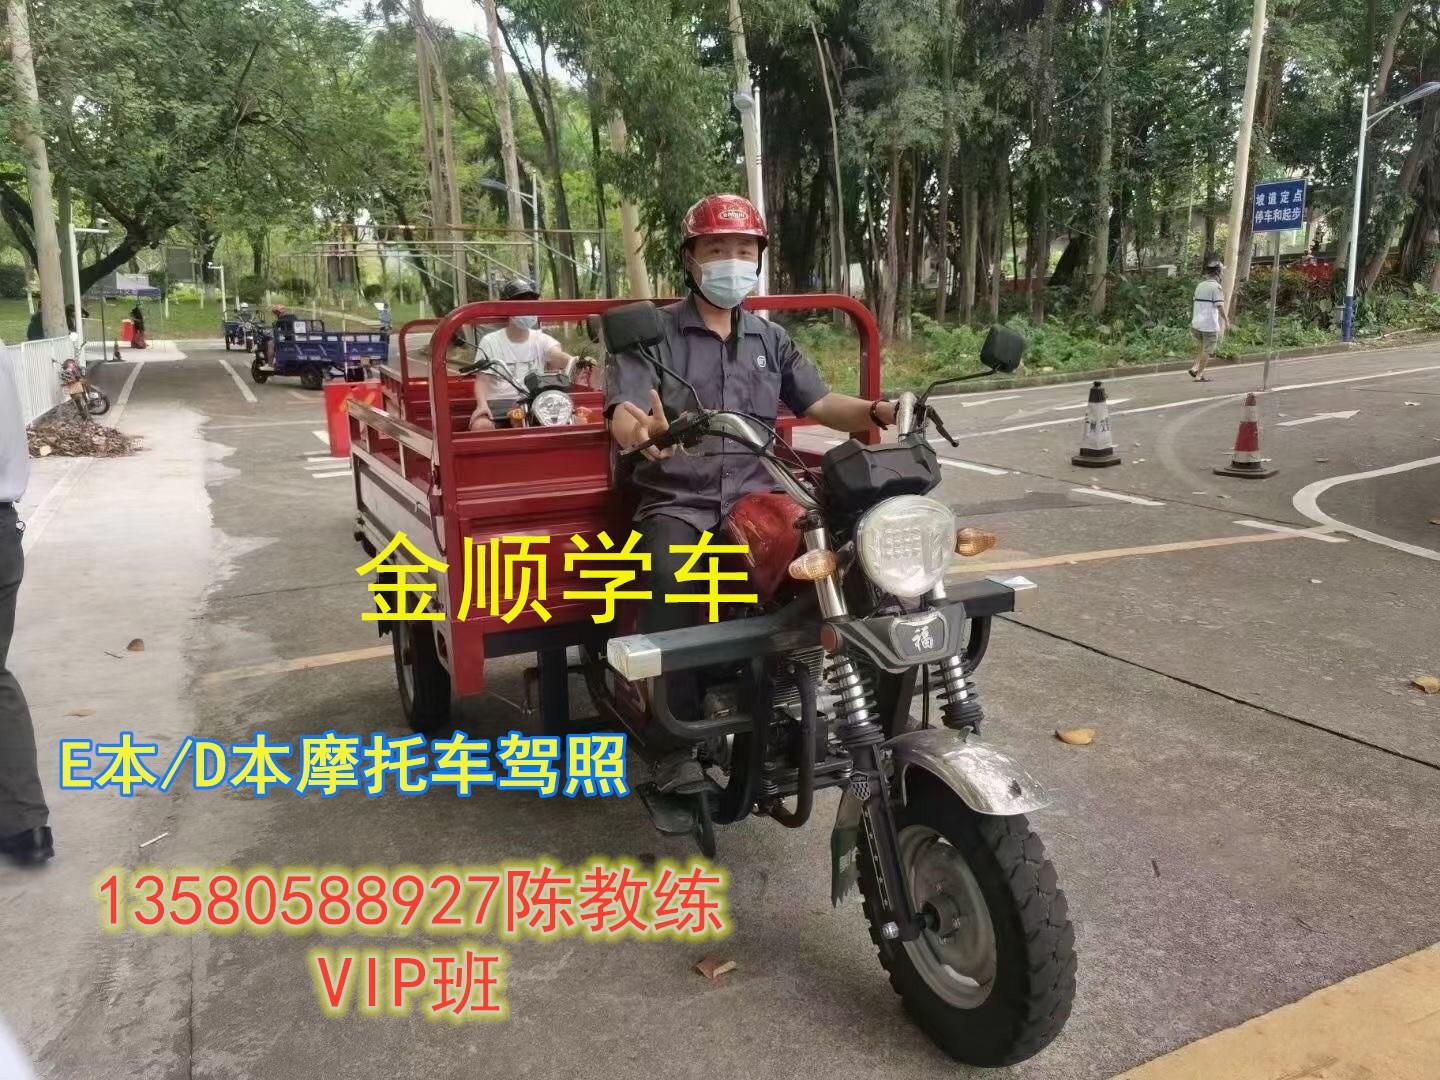 广州考个摩托车驾照要多少钱?到驾校报名还是车管所报名?